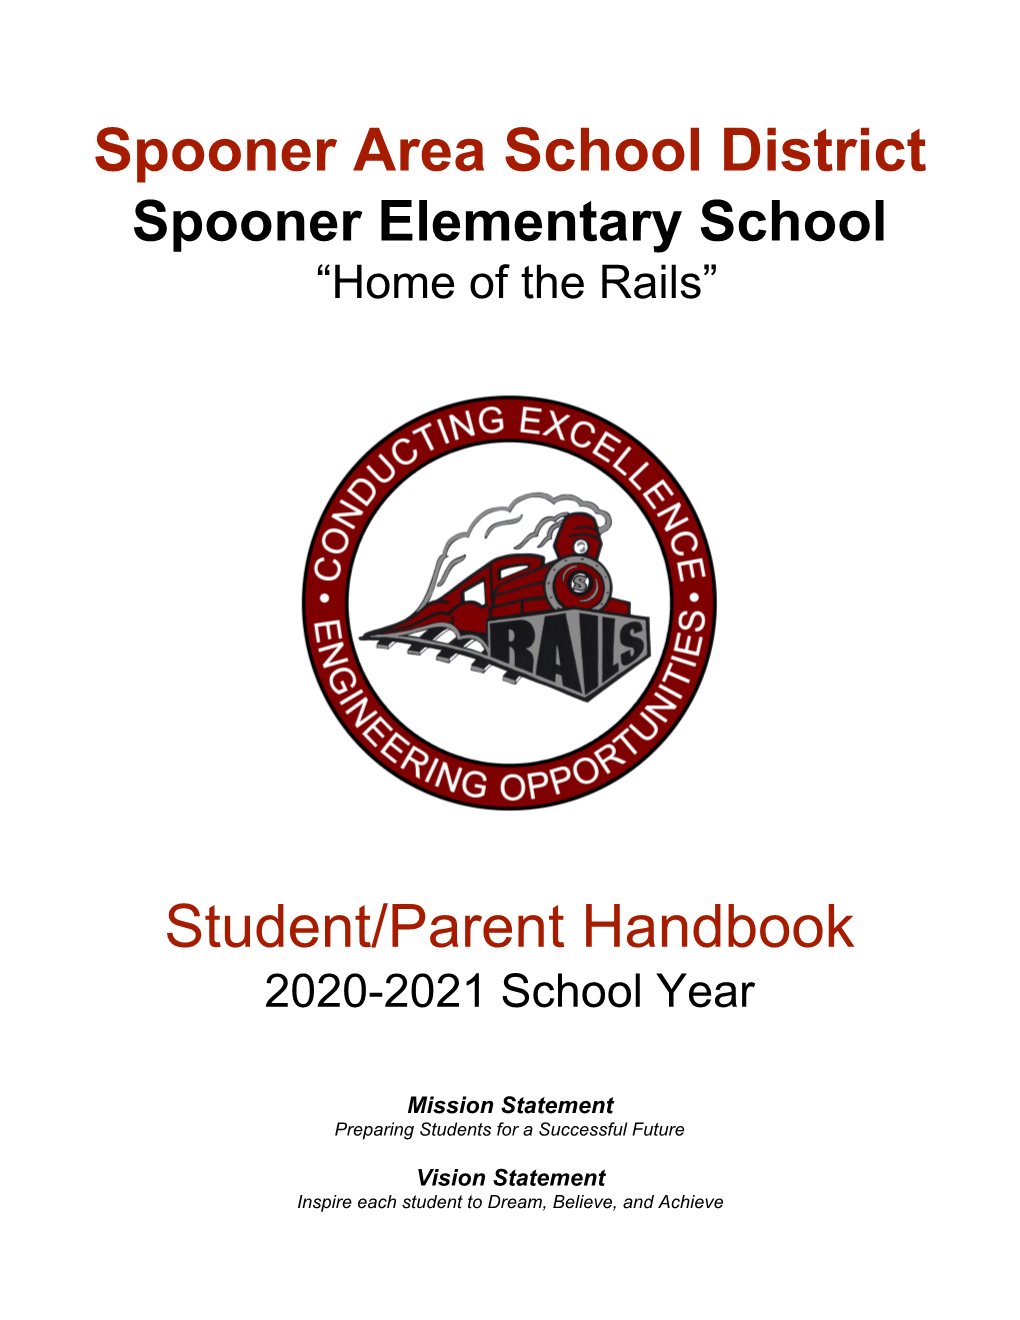 Spooner Area School District Student/Parent Handbook